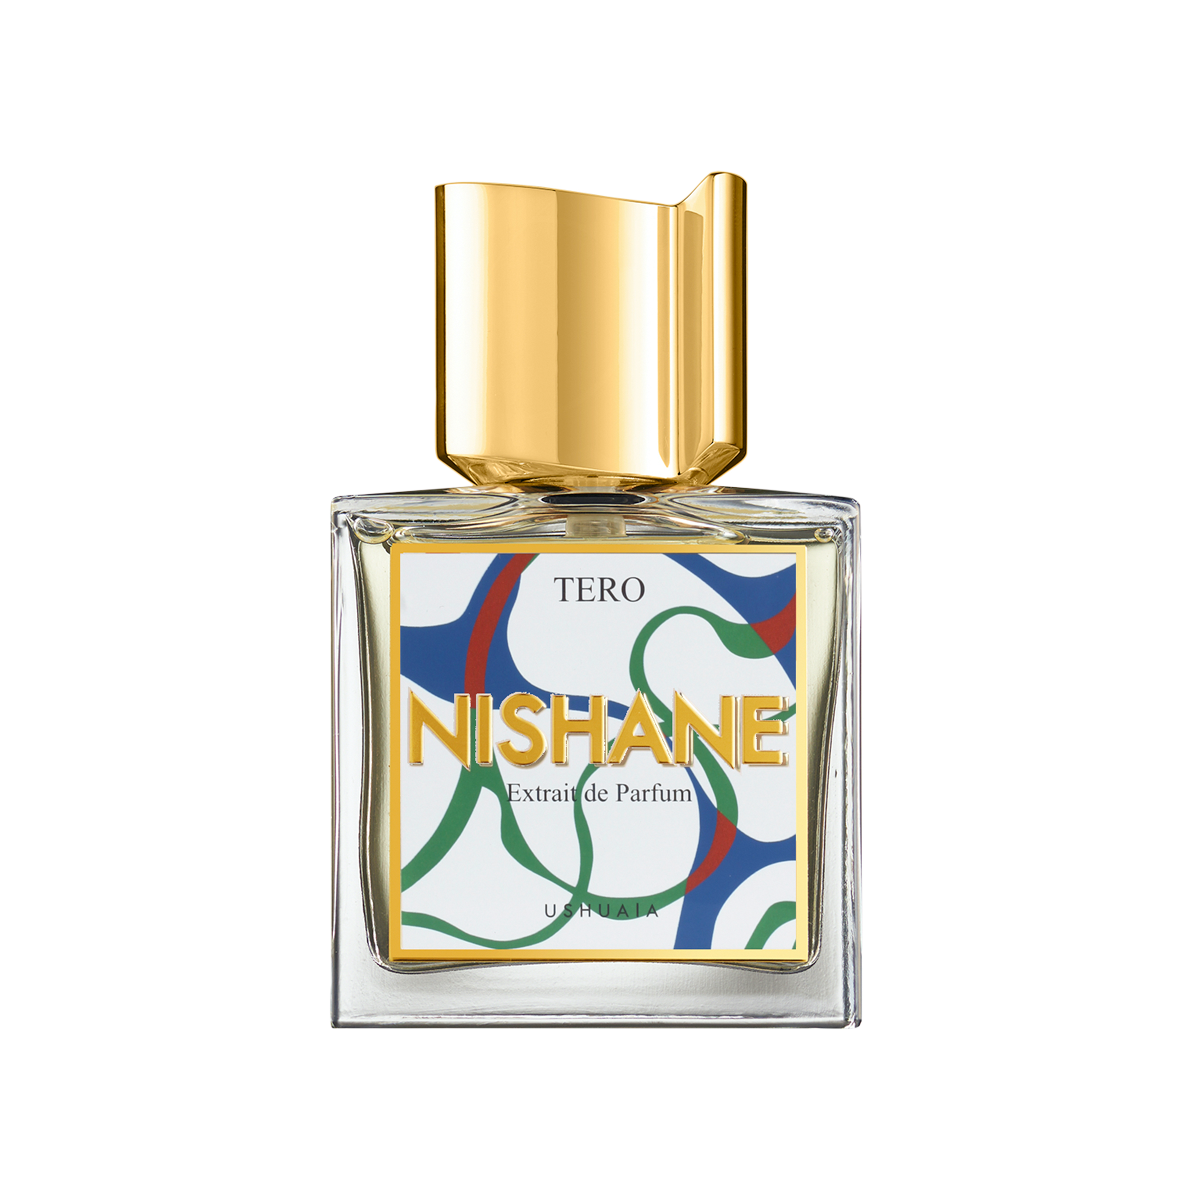 Nishane - Tero Extrait de Parfum